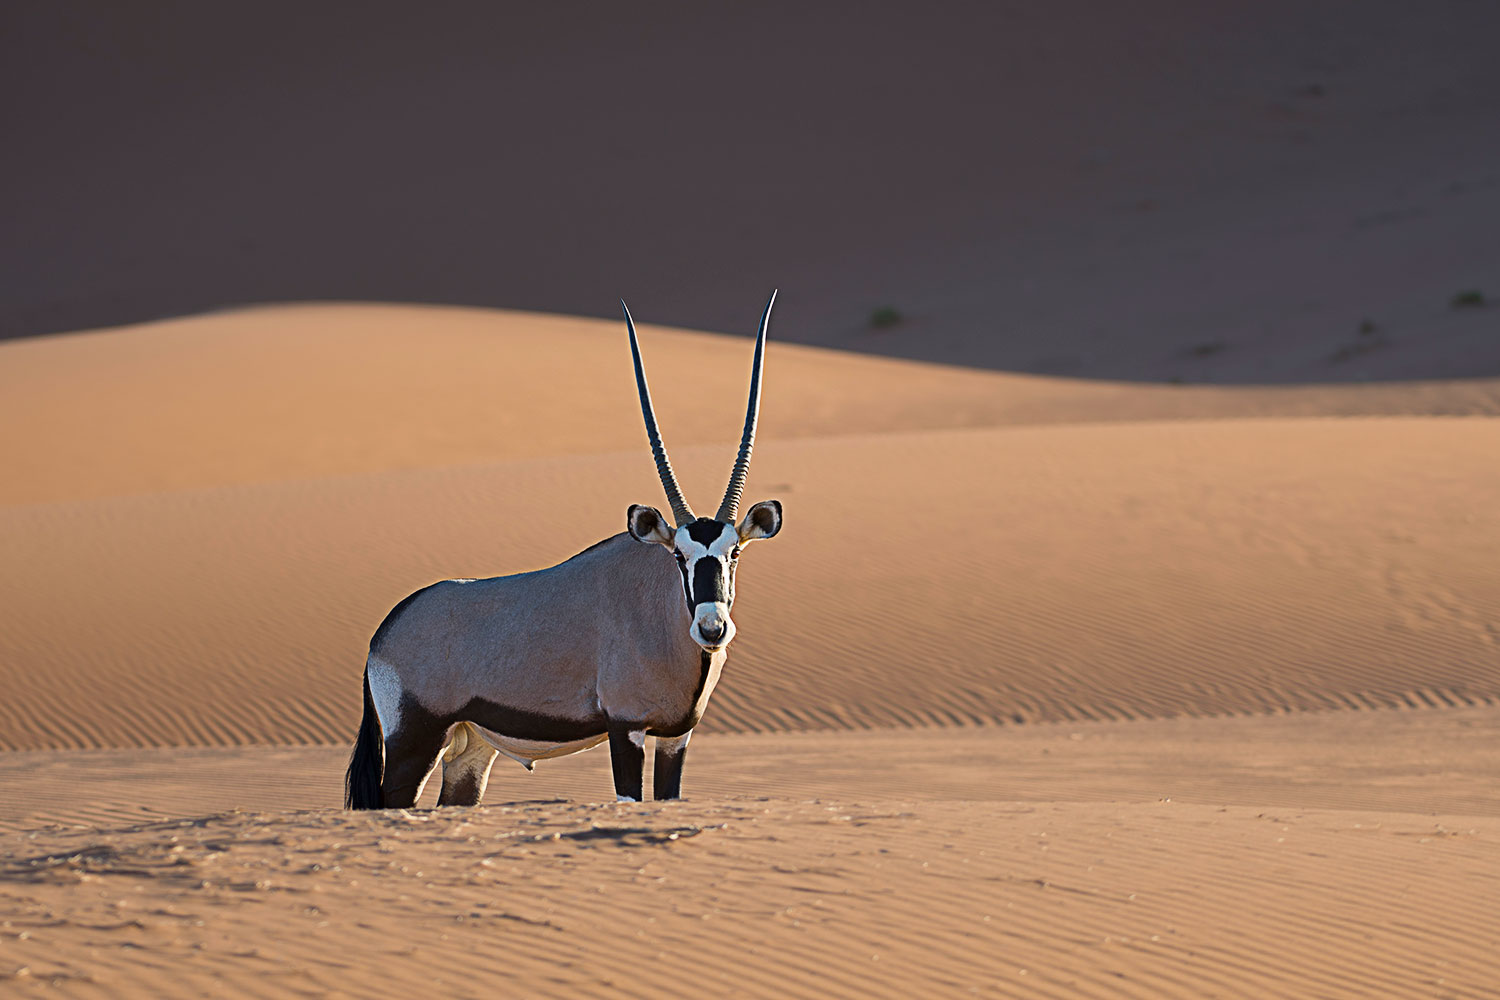 Orice nel deserto del Namib...